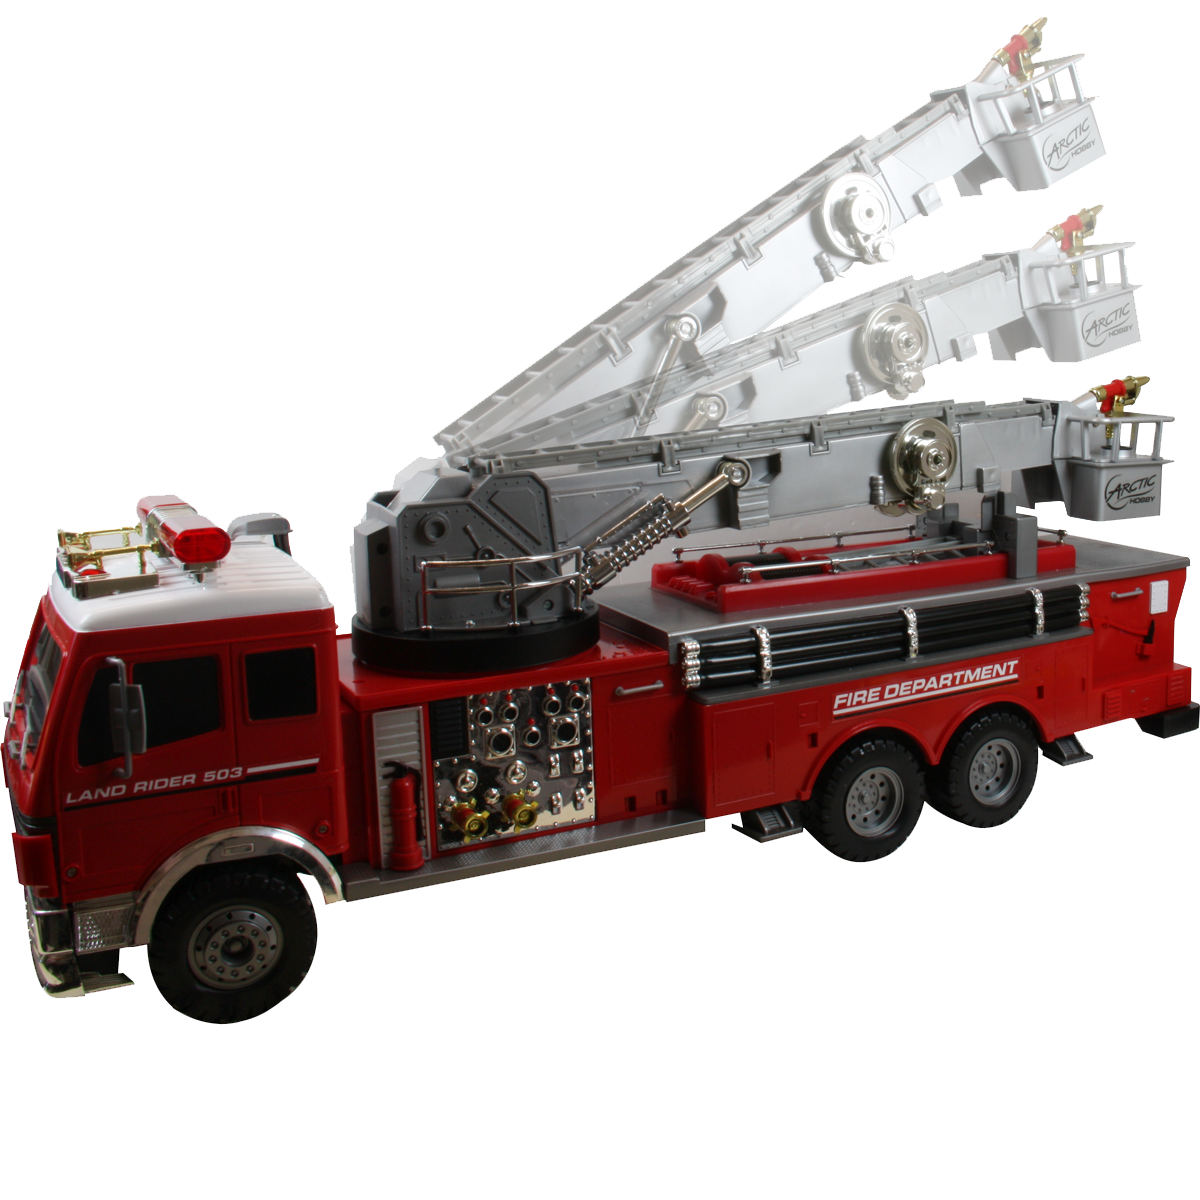 Машинки пожарная машина. Машина "Fire Truck" пожарная, 49450. Gear Fire transparent fs238-5a пожарная машина. Fire engine пожарная машина. Пожарная машина игрушка Fire Dept.